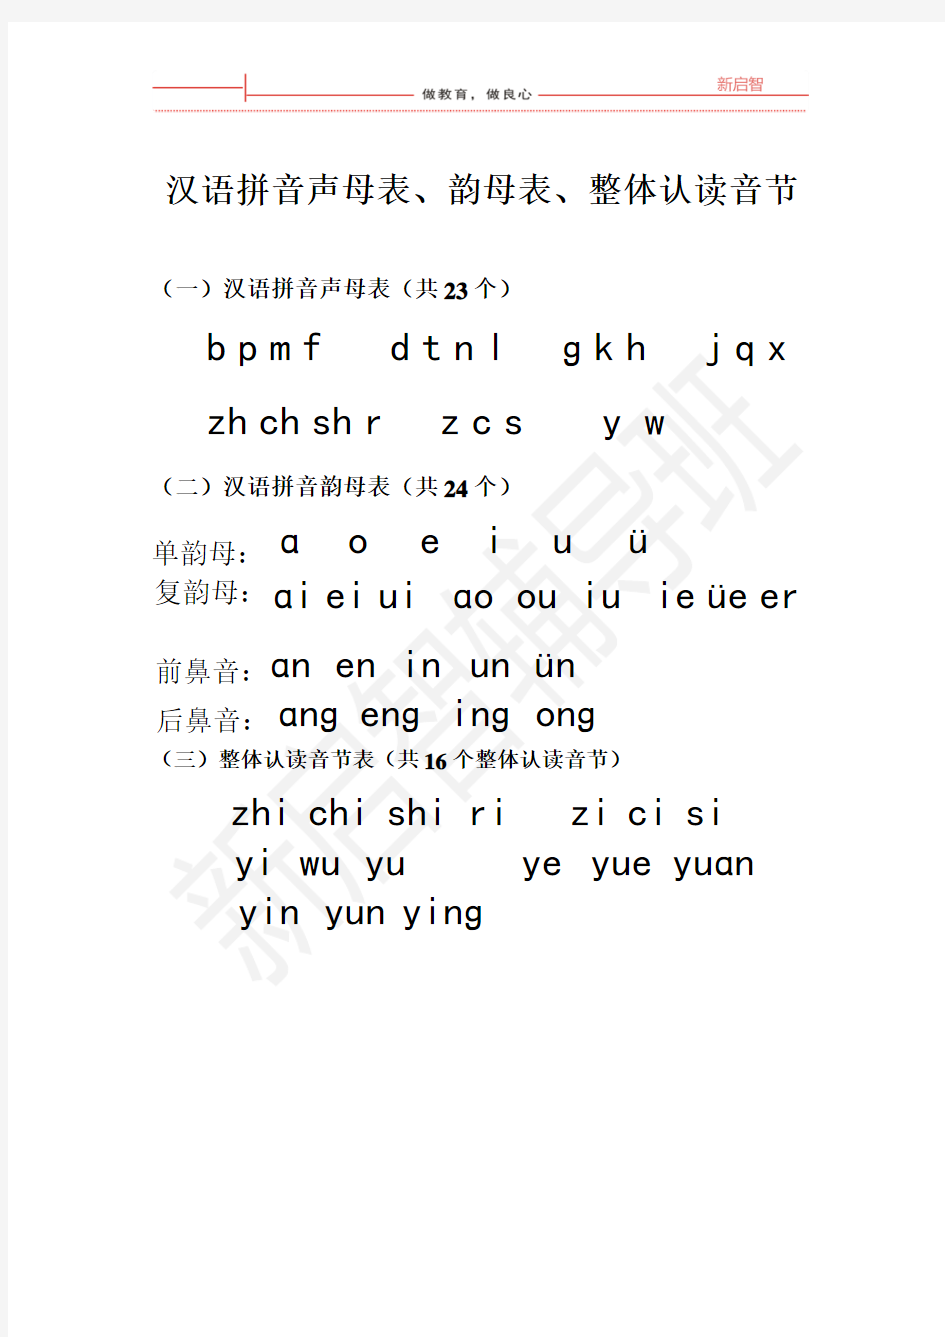 汉语拼音声母表、韵母表、整体认读音节